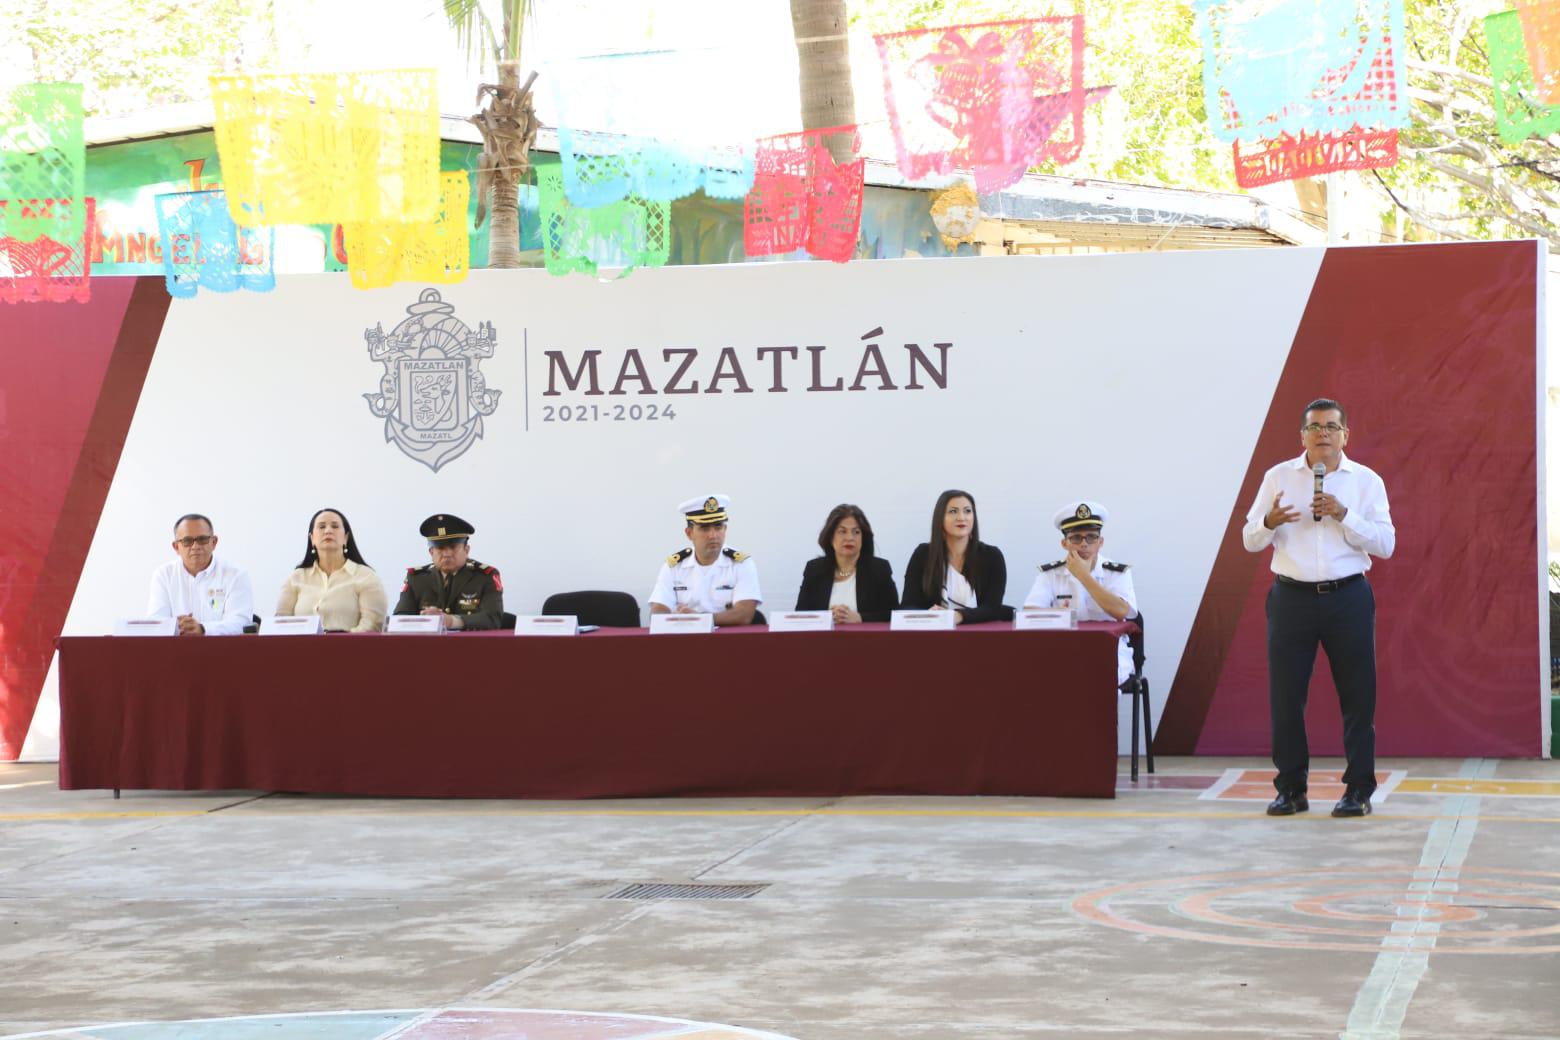 $!En jardín de niños le piden al Alcalde de Mazatlán un aula, pelotas y muñecas